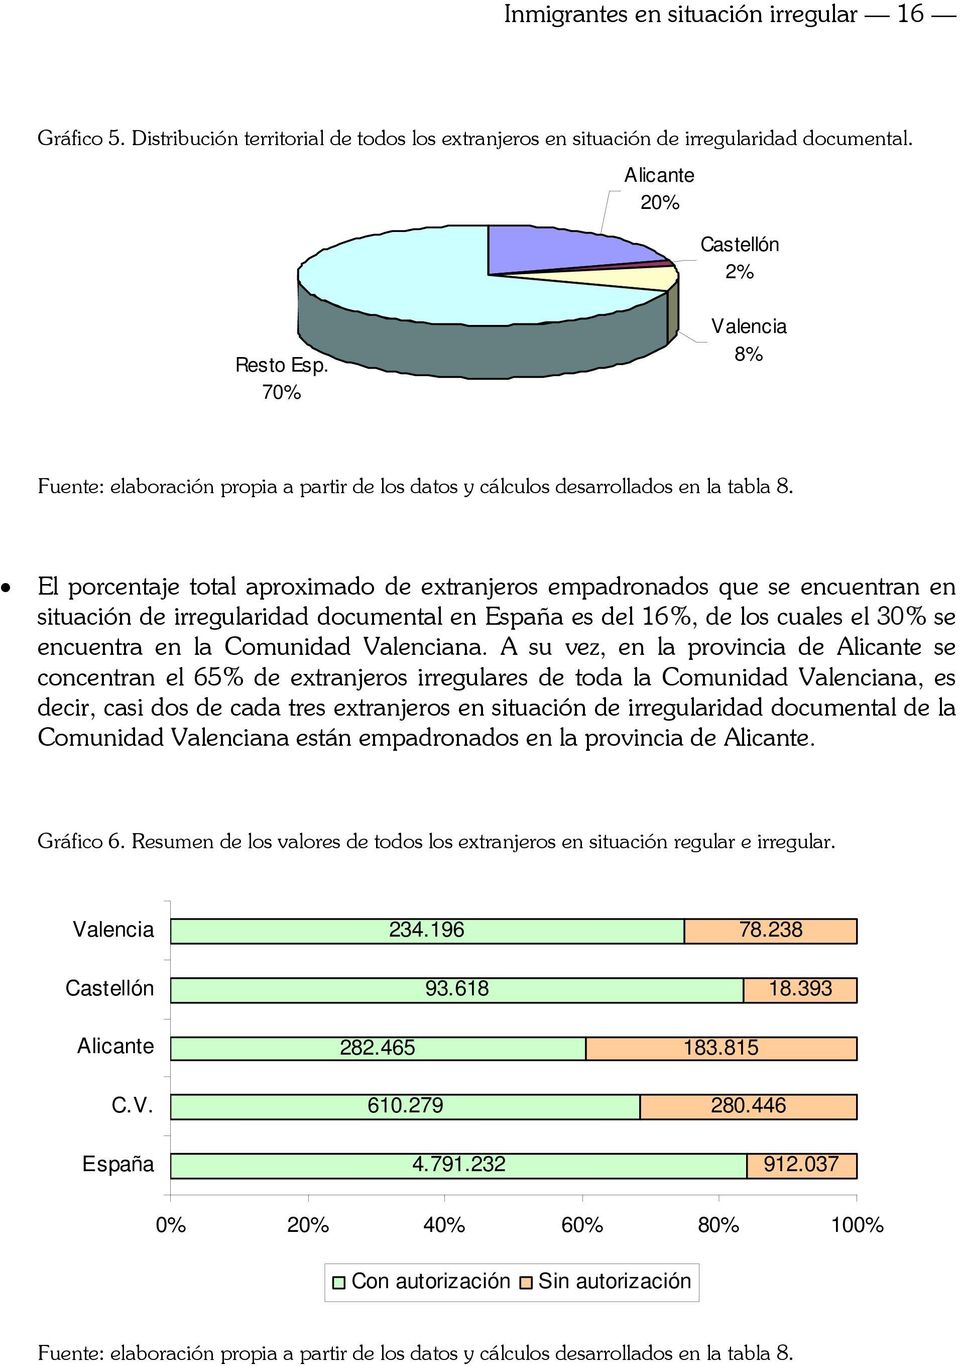 El porcentaje total aproximado de extranjeros empadronados que se encuentran en situación de irregularidad documental en España es del 16%, de los cuales el 30% se encuentra en la Comunidad